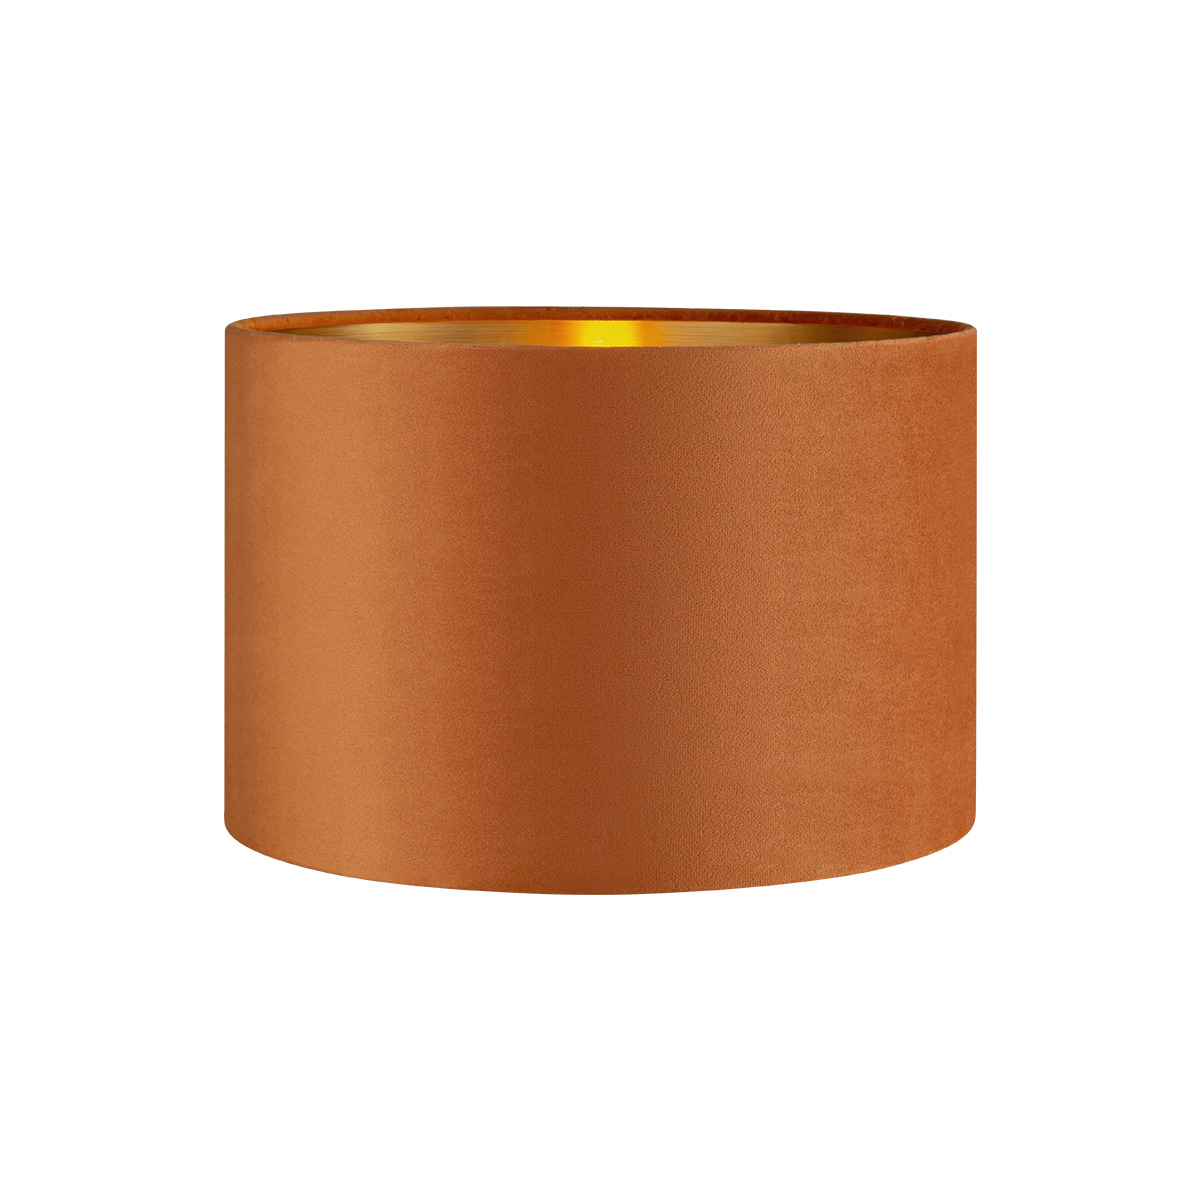 Tangla lighting - TLS7564-30OG - Lampshade - velvet - orange - diameter 30cm - E27